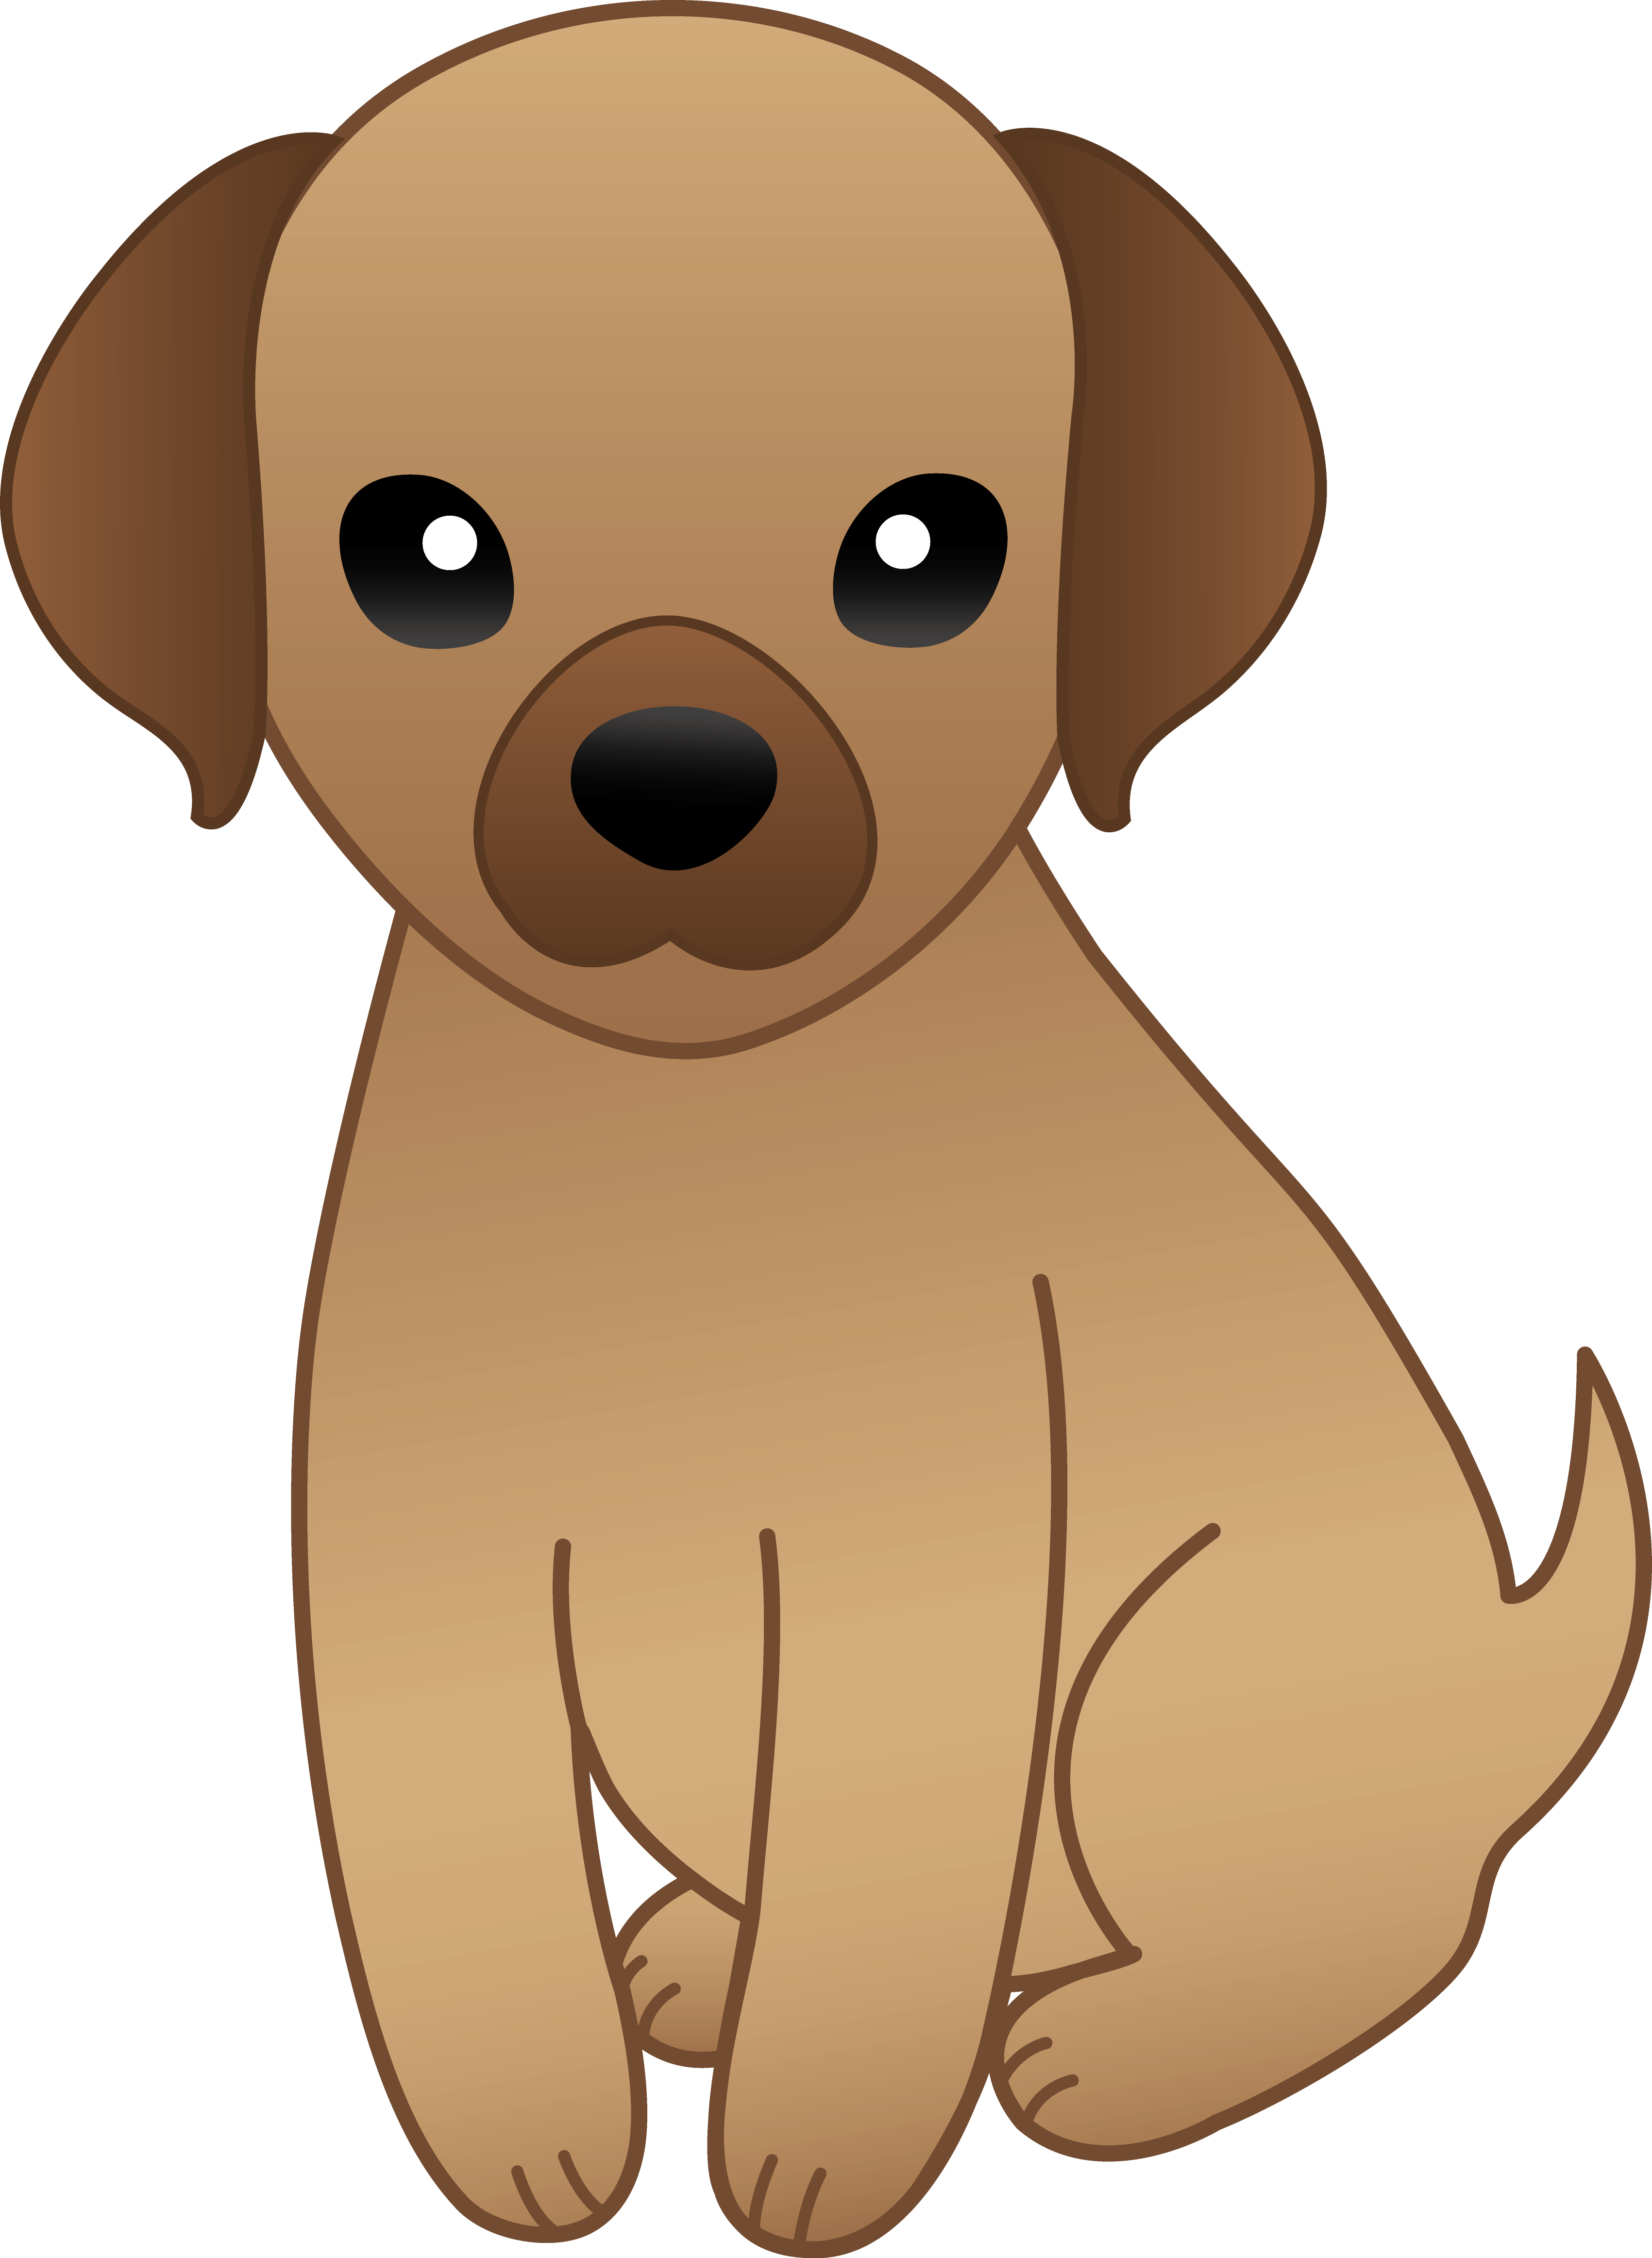 Cute Cartoon Dogs Clip Art Clipart - Free Clipart